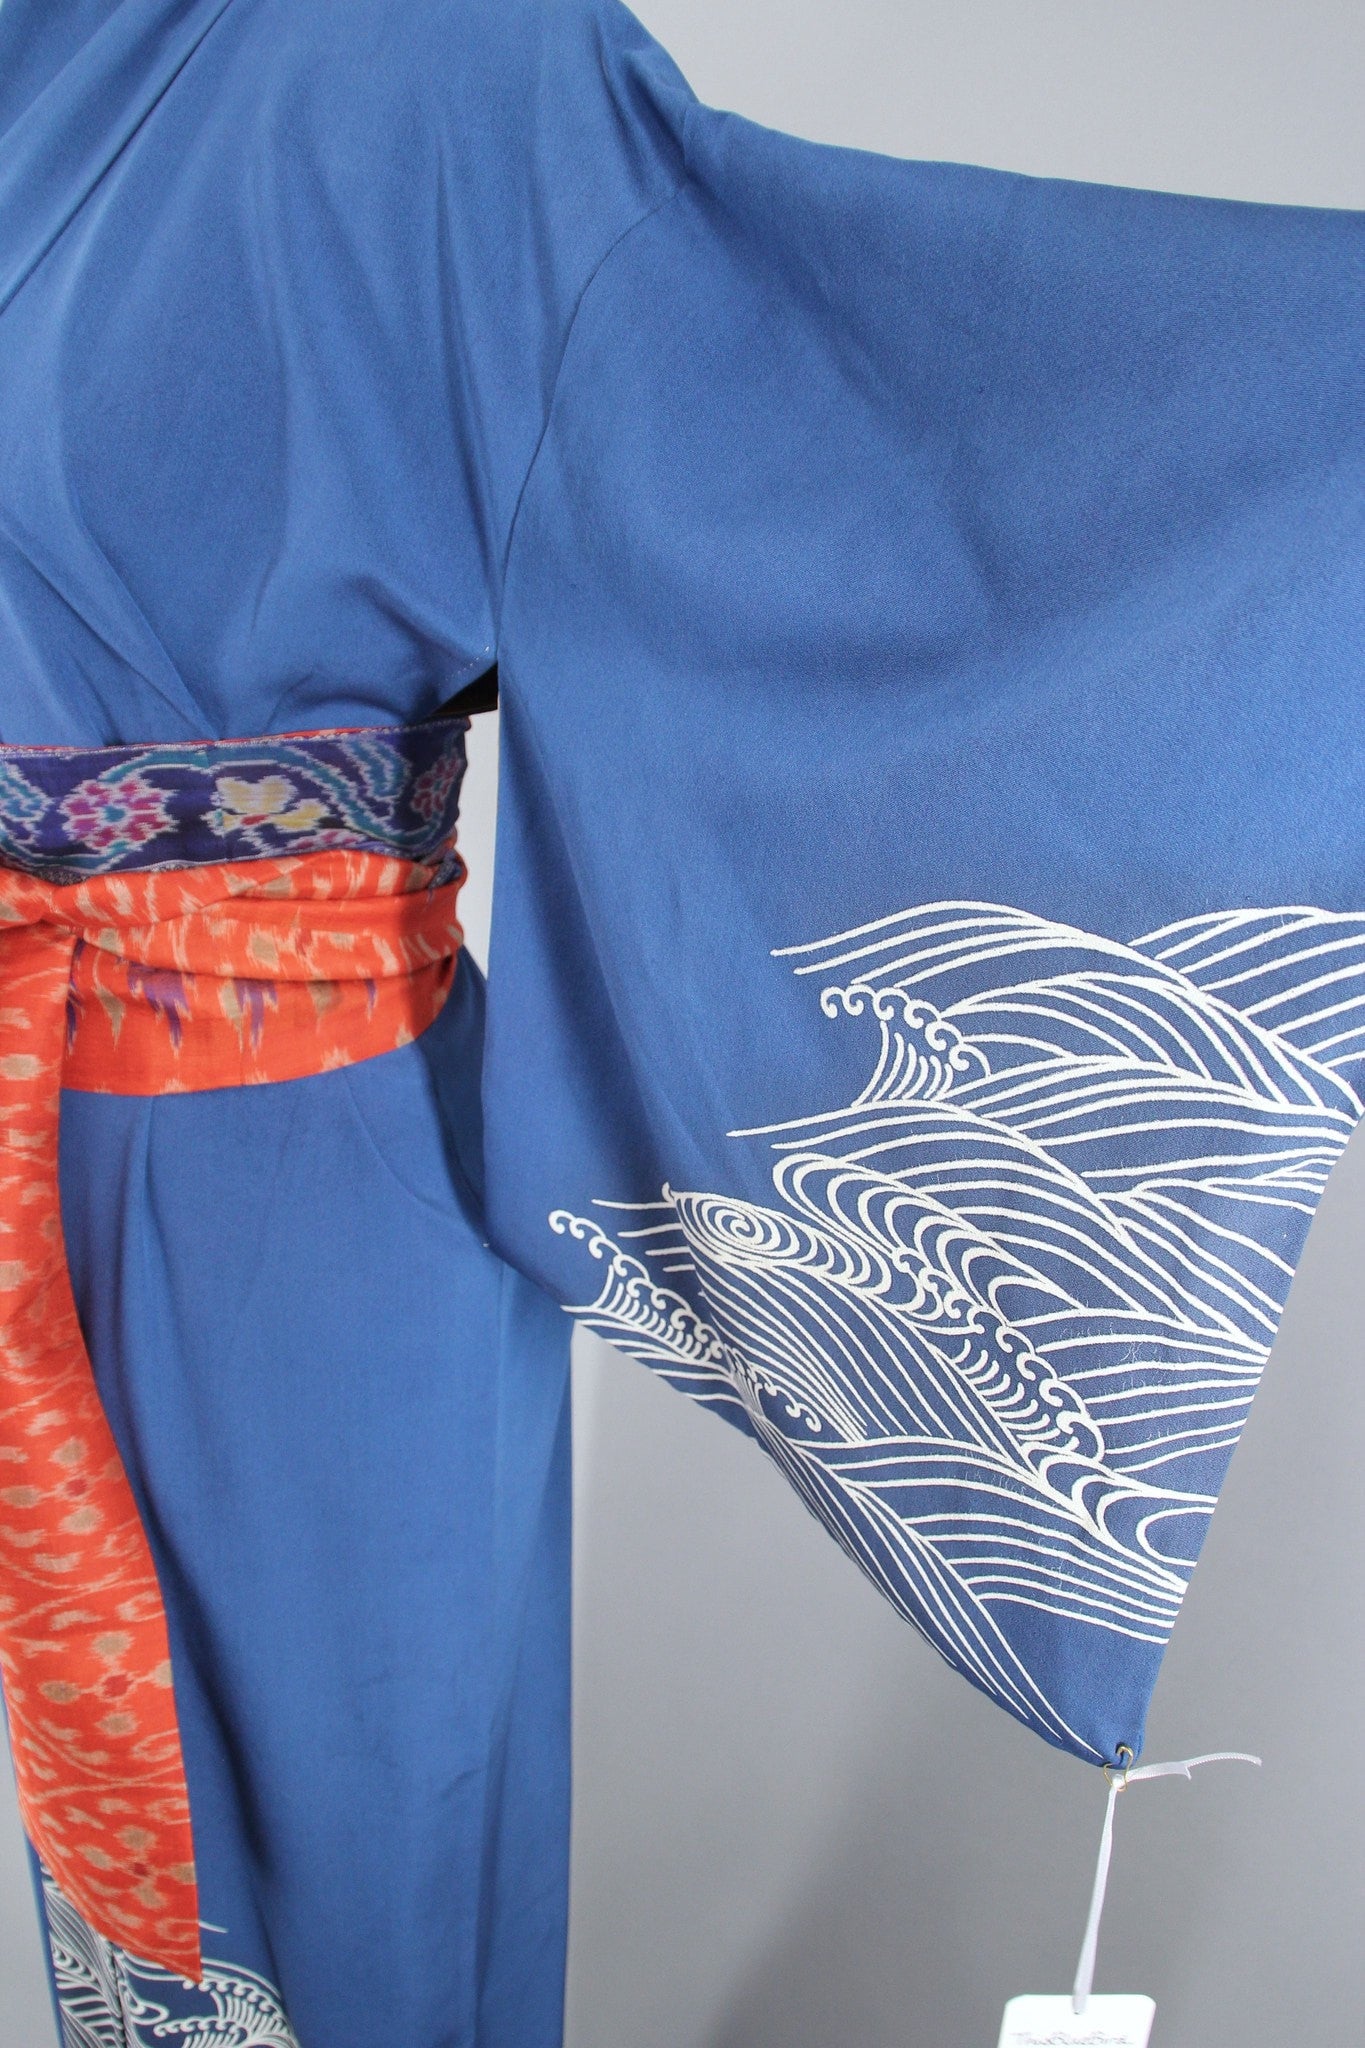 1960s Vintage Silk Kimono Robe with Blue Waves - ThisBlueBird